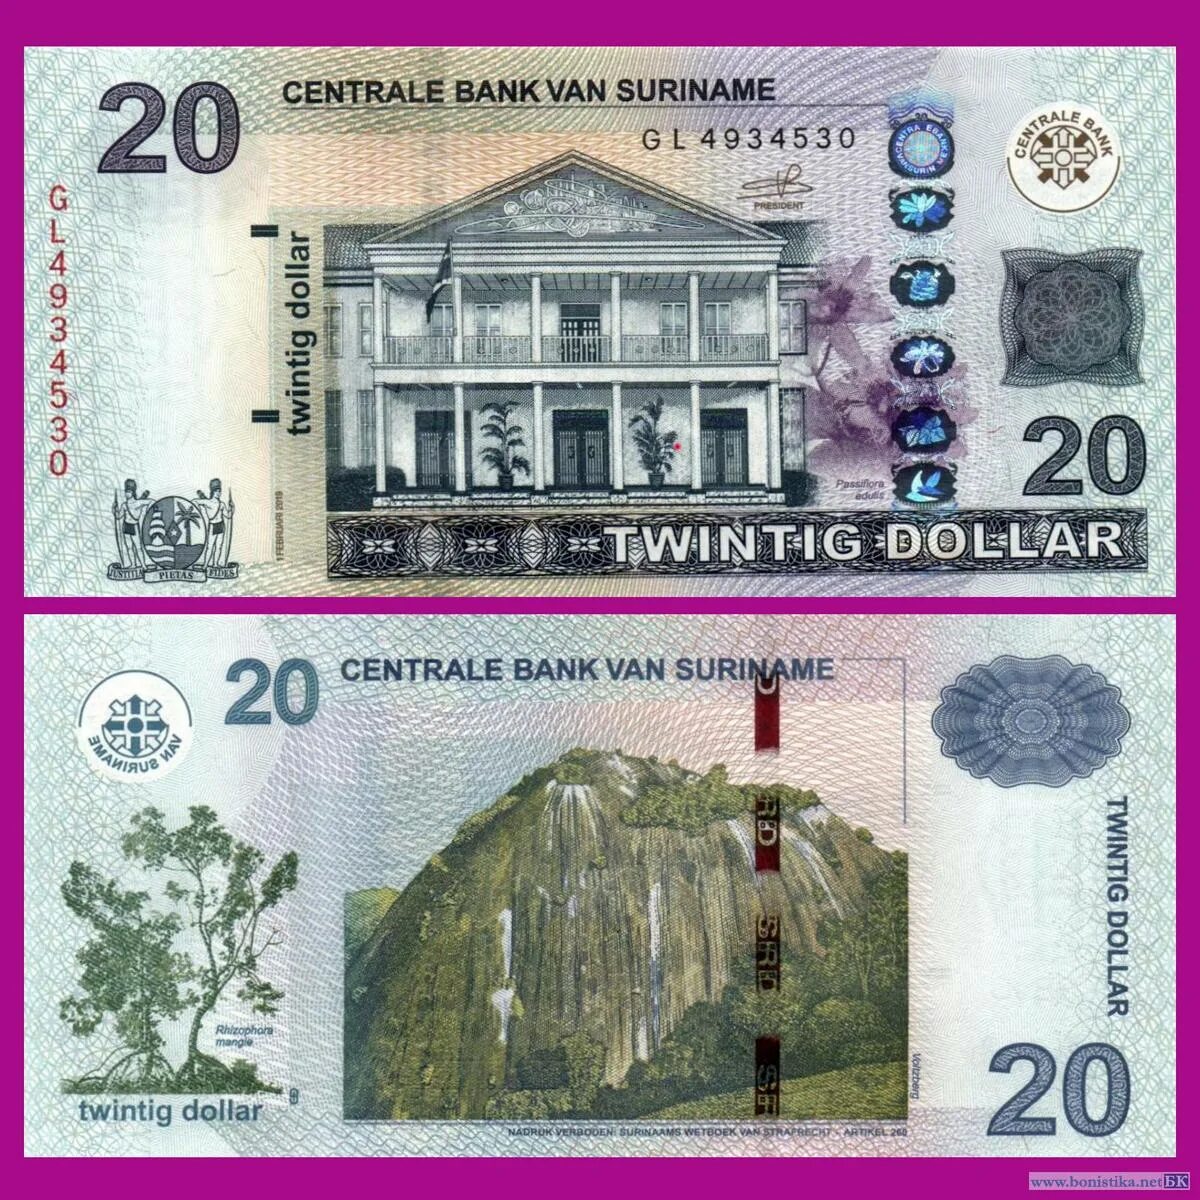 Суринамский доллар. Centrale Bank van Suriname. 5 Centrale Bank van Suriname. Тираж банкноты 5.